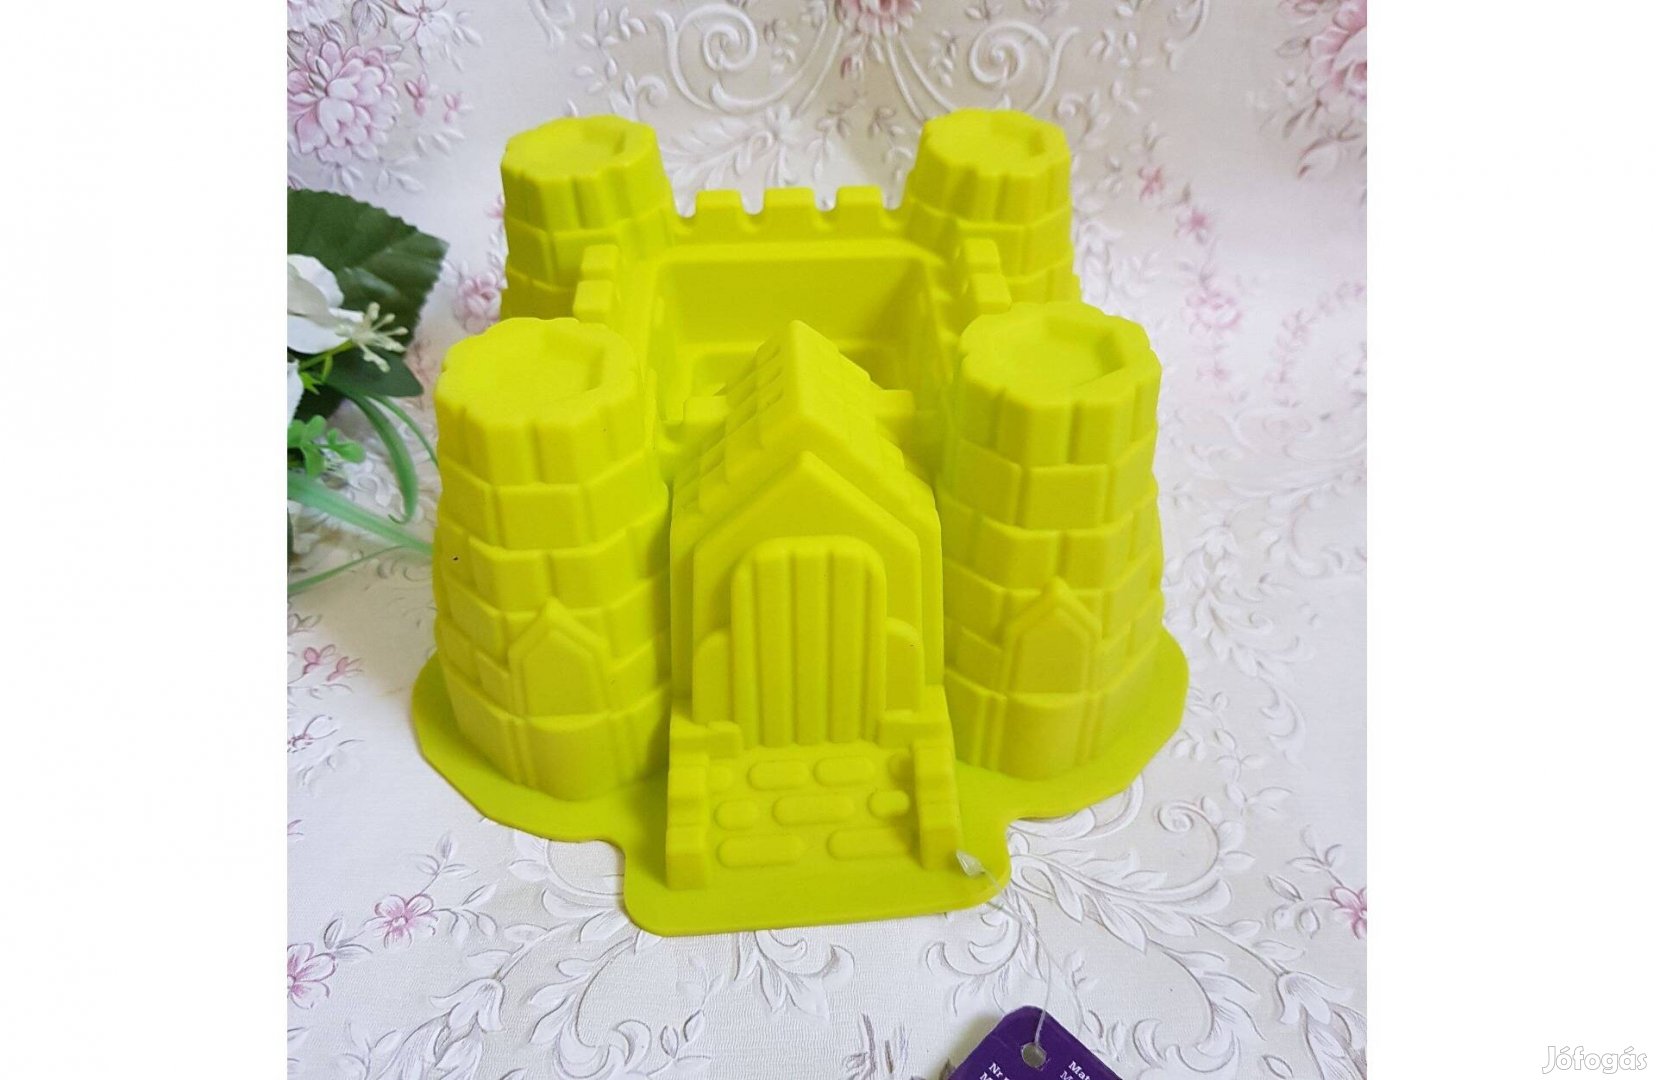 Új, vár alakú szilikon sütőforma, kuglóf sütőforma